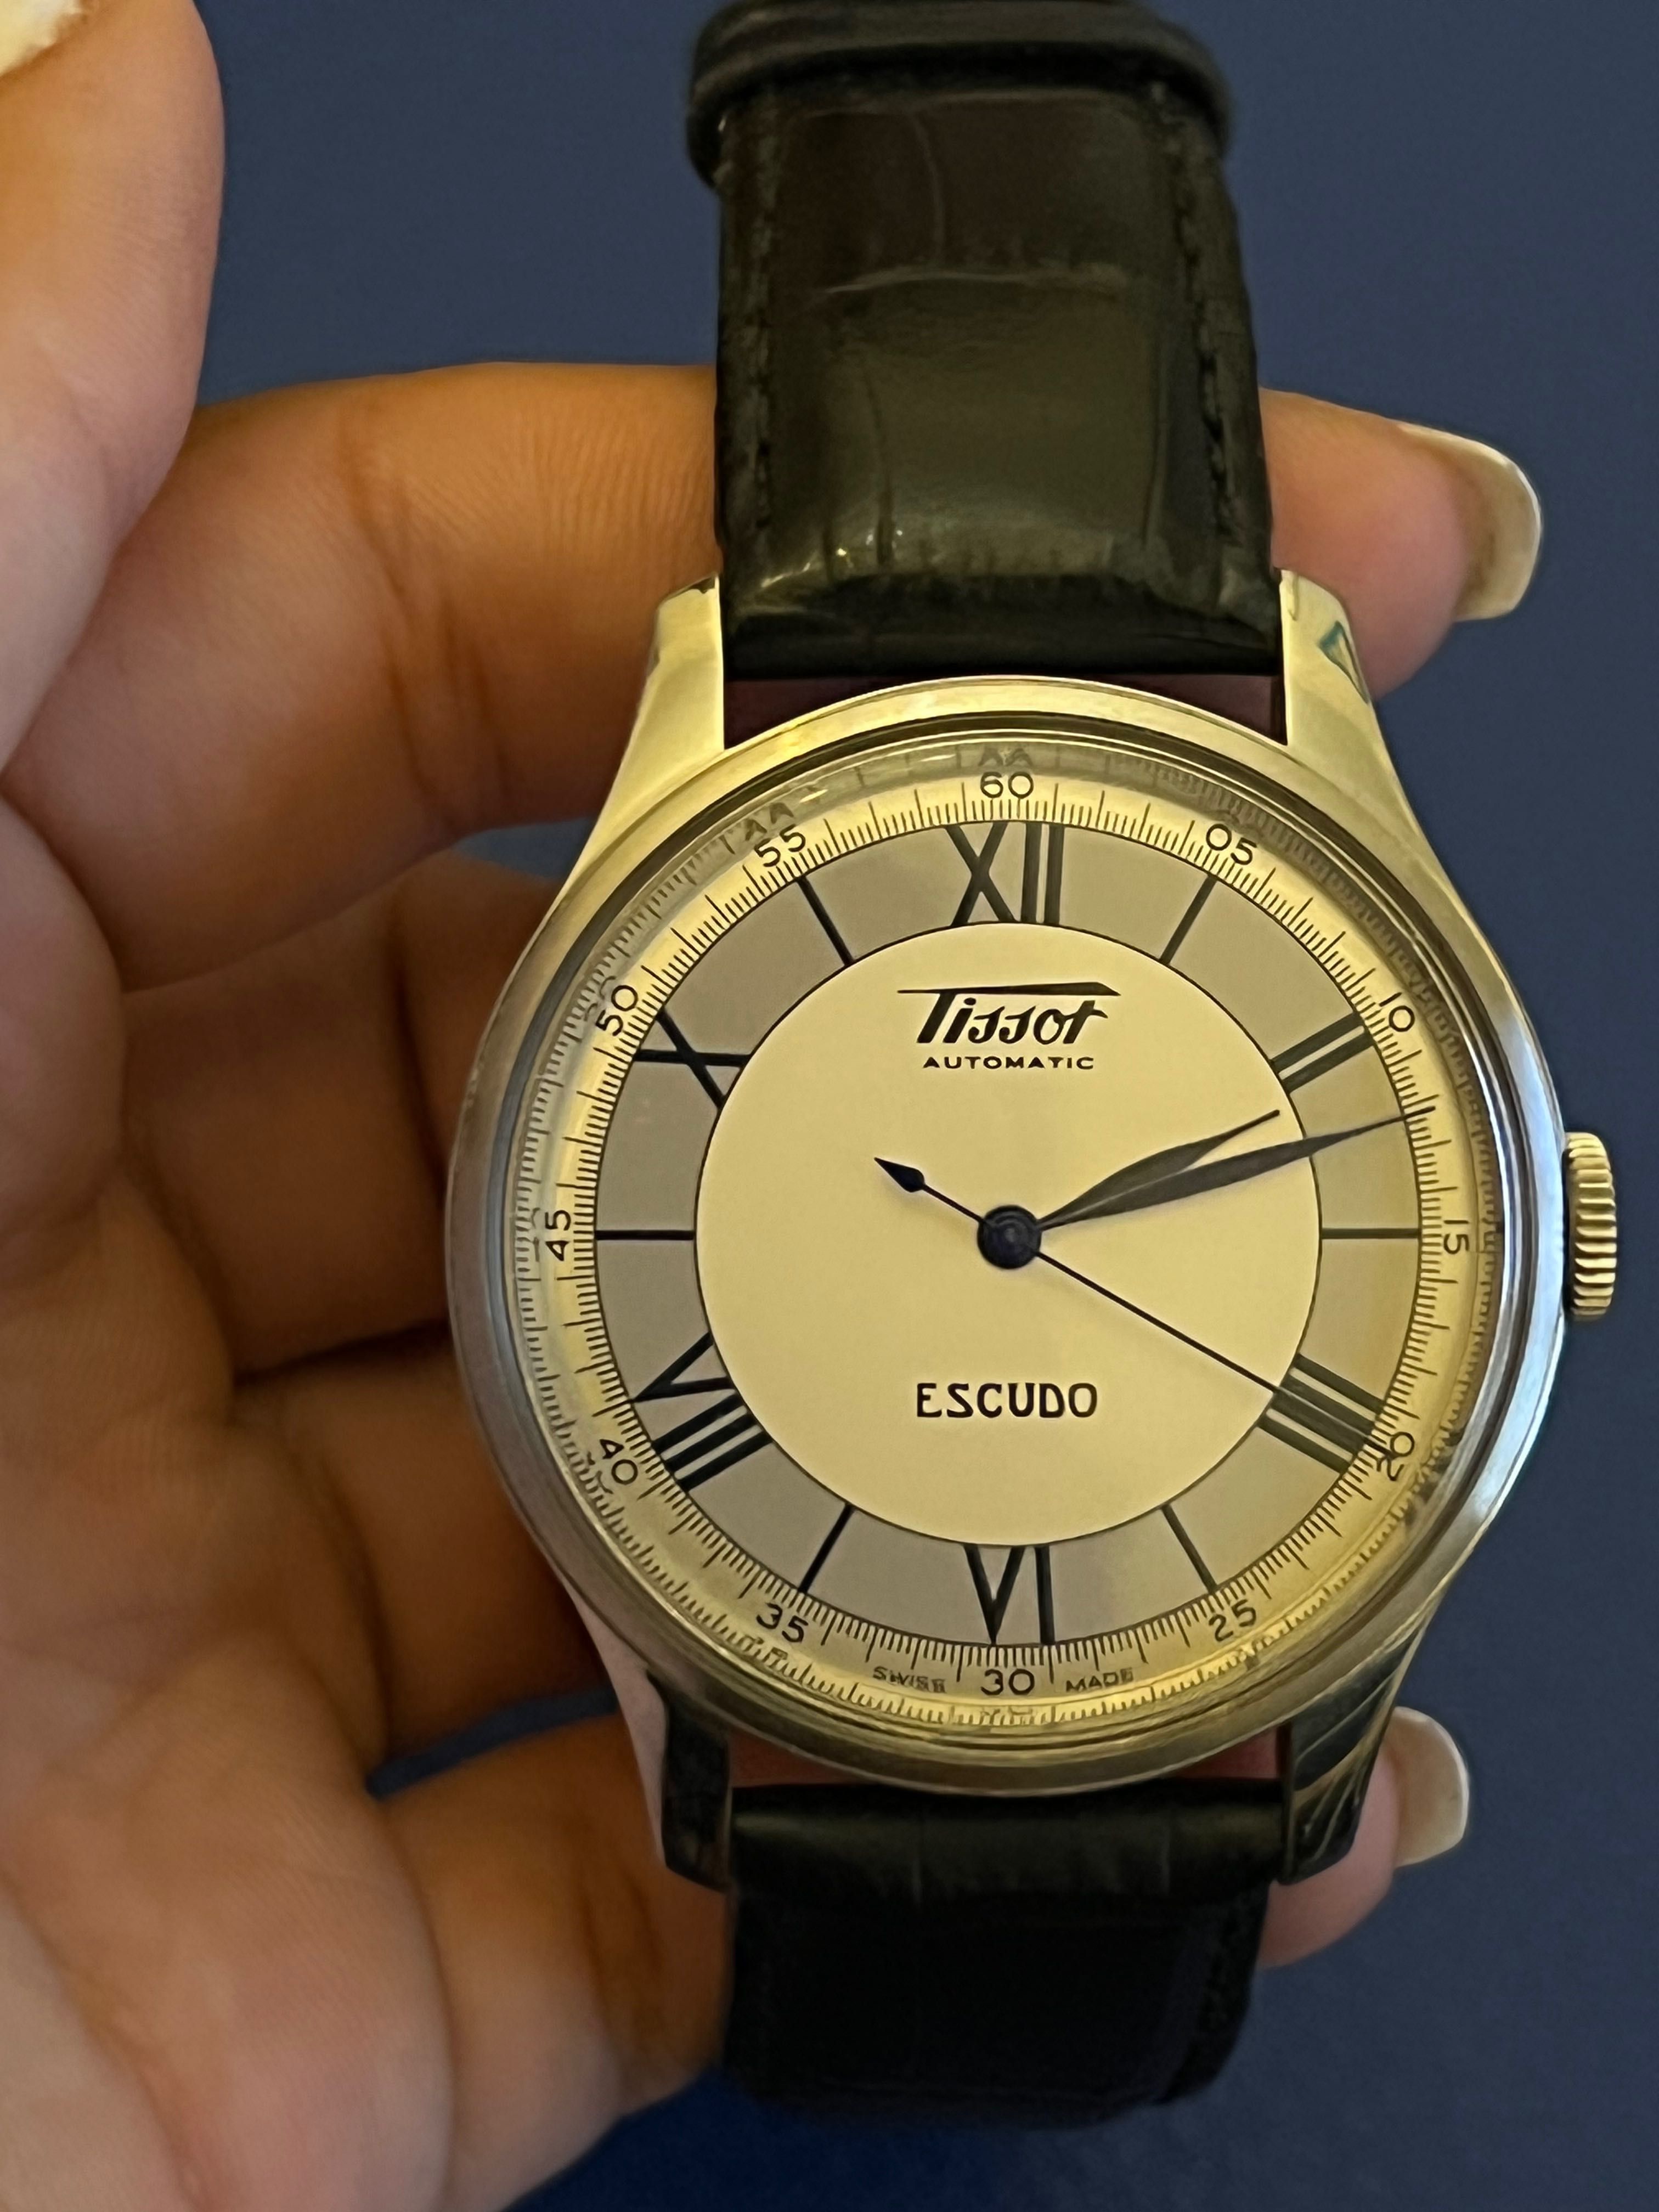 Edição limitada relógio Tissot Escudo - COM CERTIFICADO